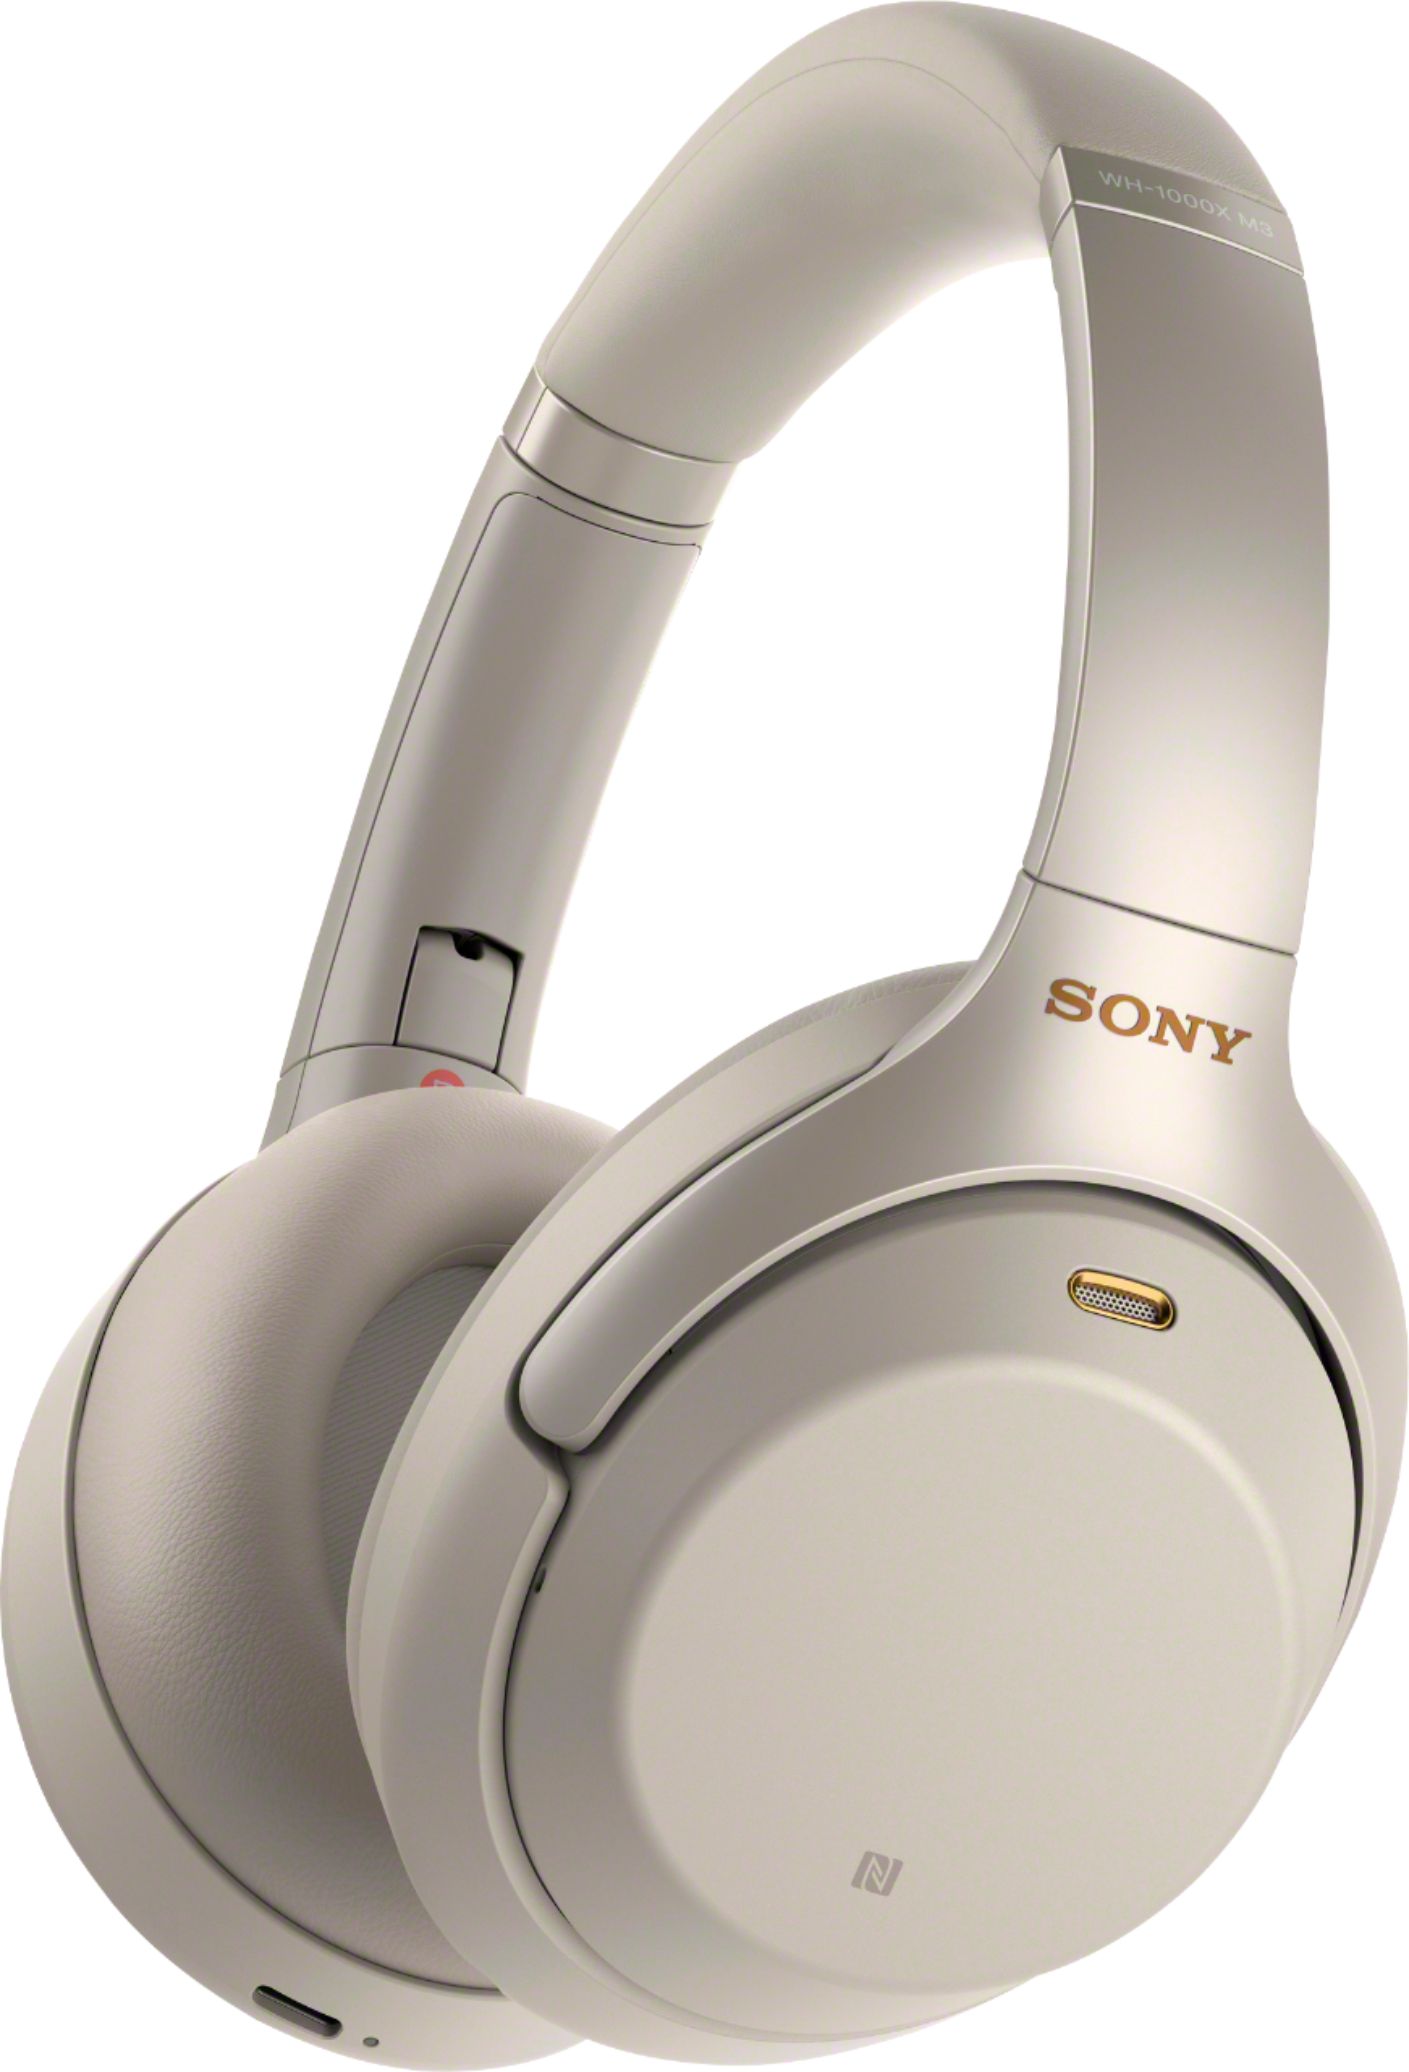 オーディオ機器 ヘッドフォン Sony WH-1000XM3 Wireless Noise Cancelling Over-the  - Best Buy